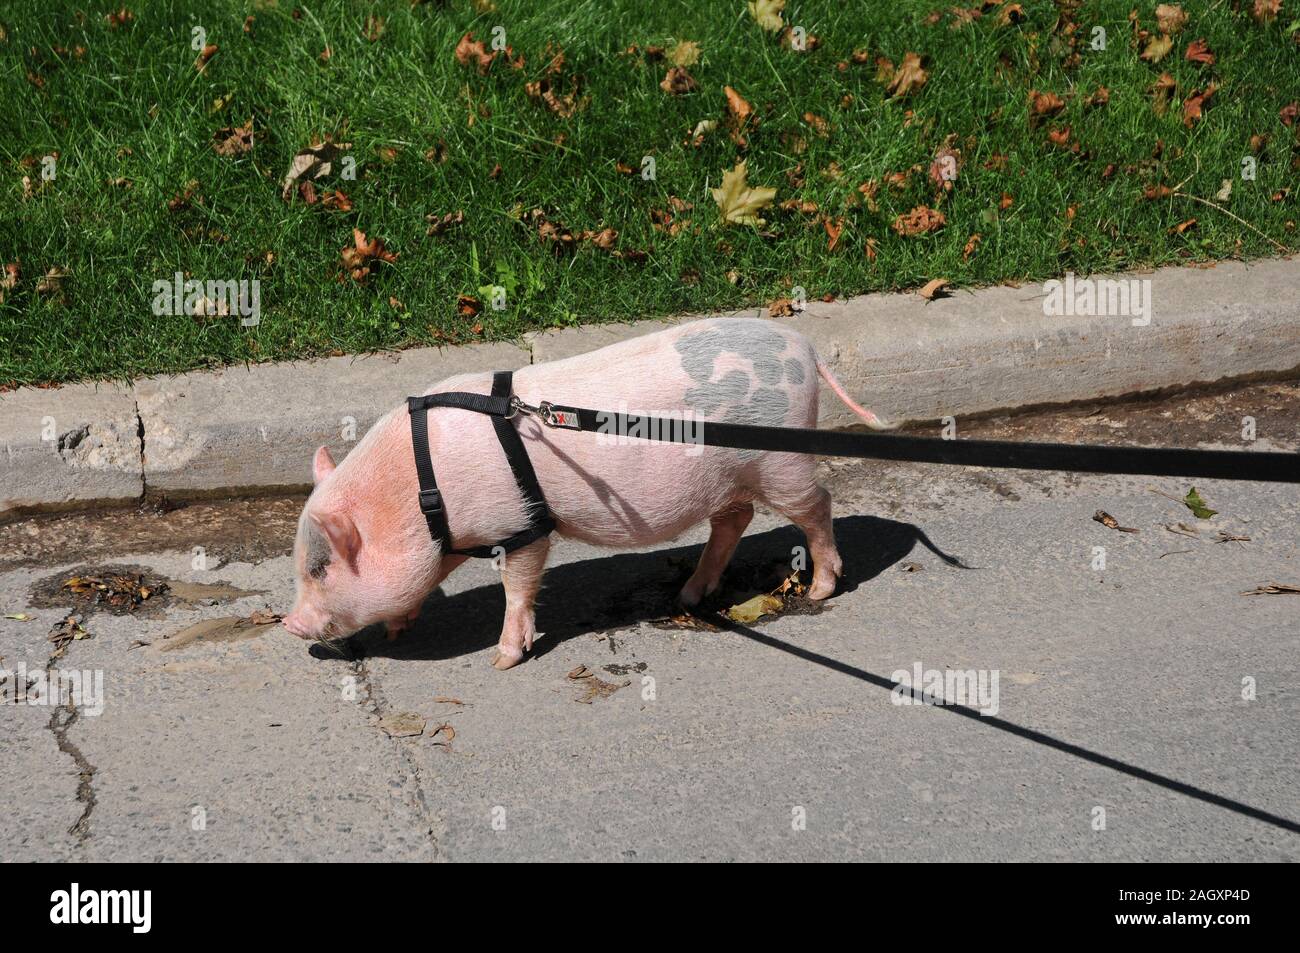 Pig as a pet Stock Photo